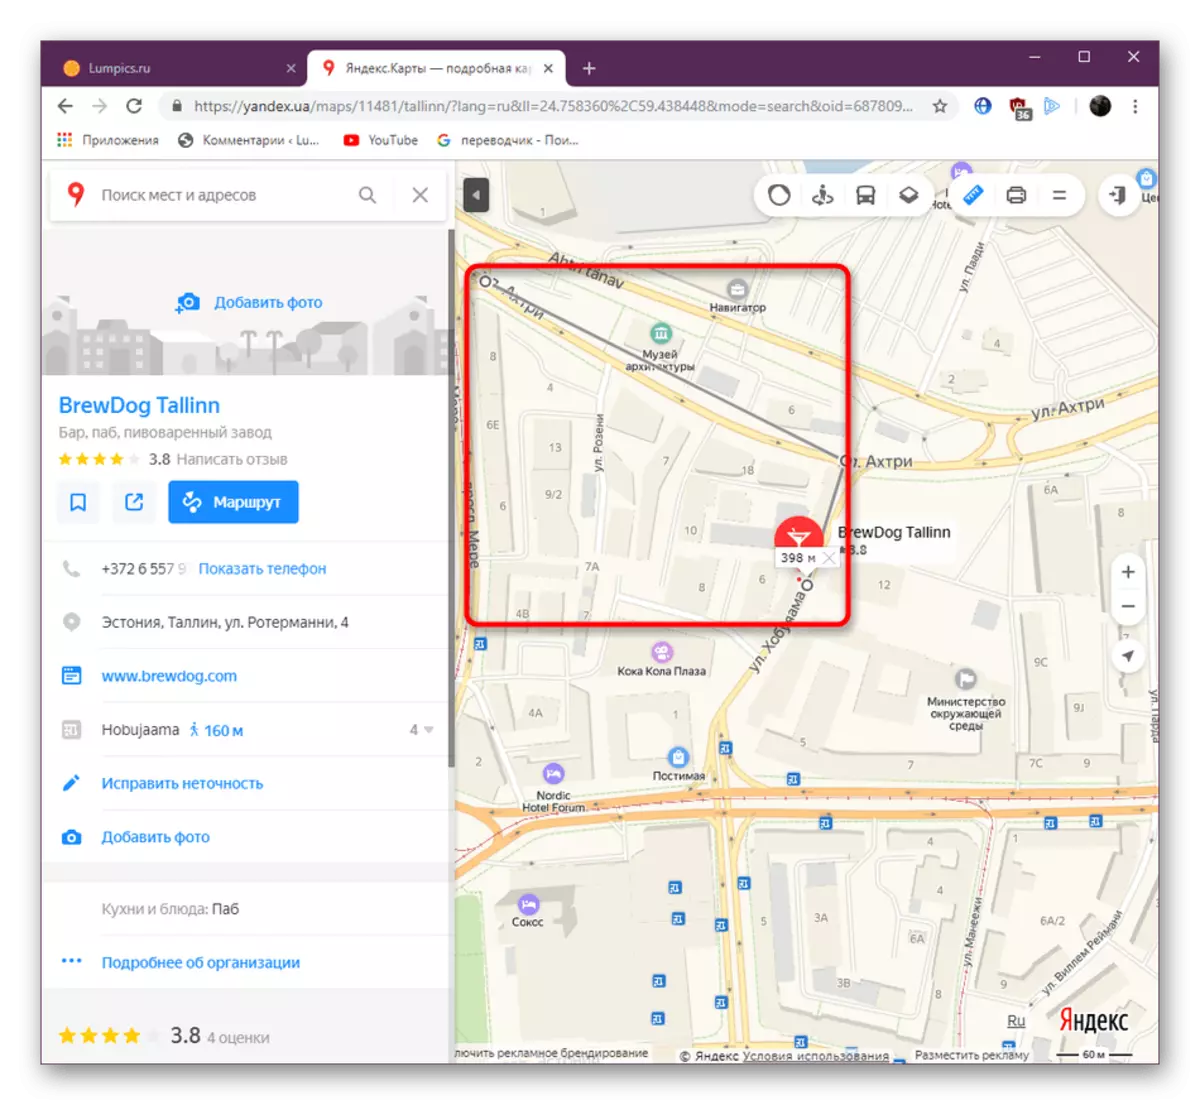 تركيب نقاط إضافية من أجل أداة سطر على موقع Yandex.Maps